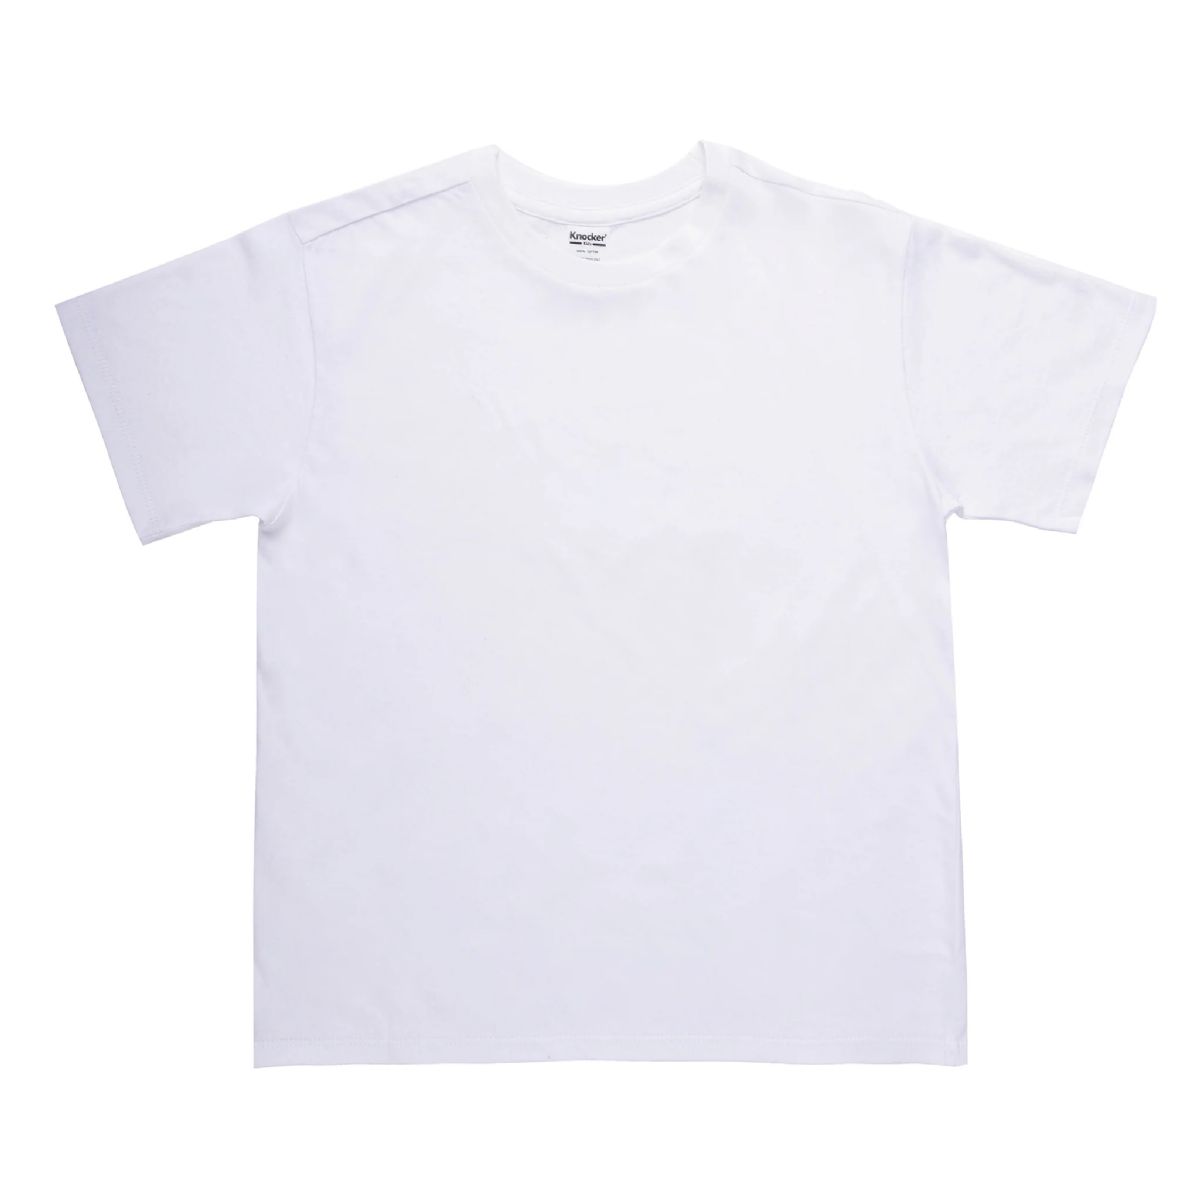 54 Wholesale Boy's Cotton Round Neck T-Shirt